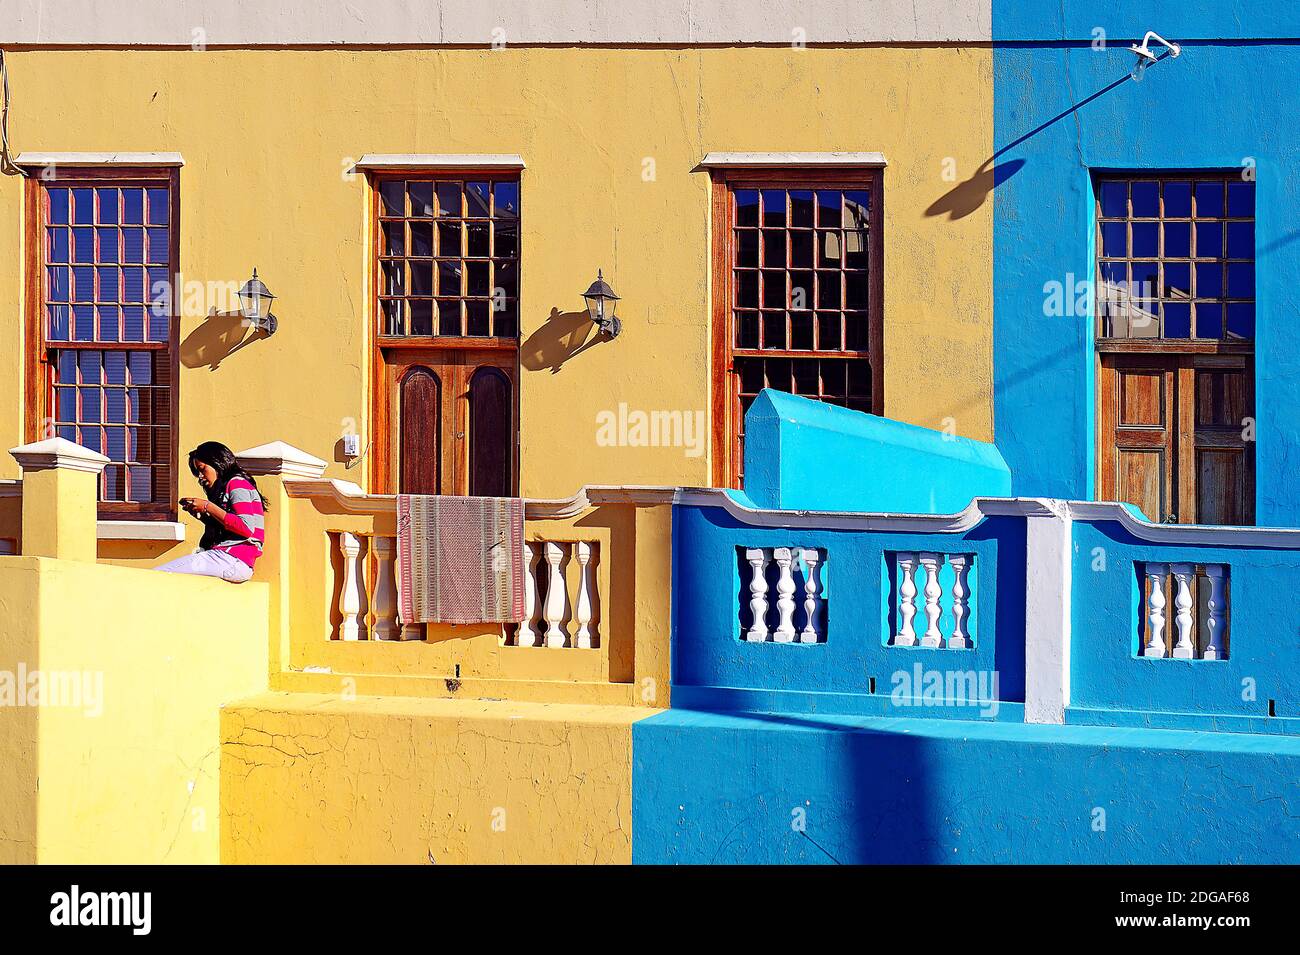 Farbige Häuser a Bo-Kaap, malayisch, moslimisches Viertel, Kapstadt, West Kap, Western Cape, Südafrika, Afrika, Malaienviertel, Foto Stock